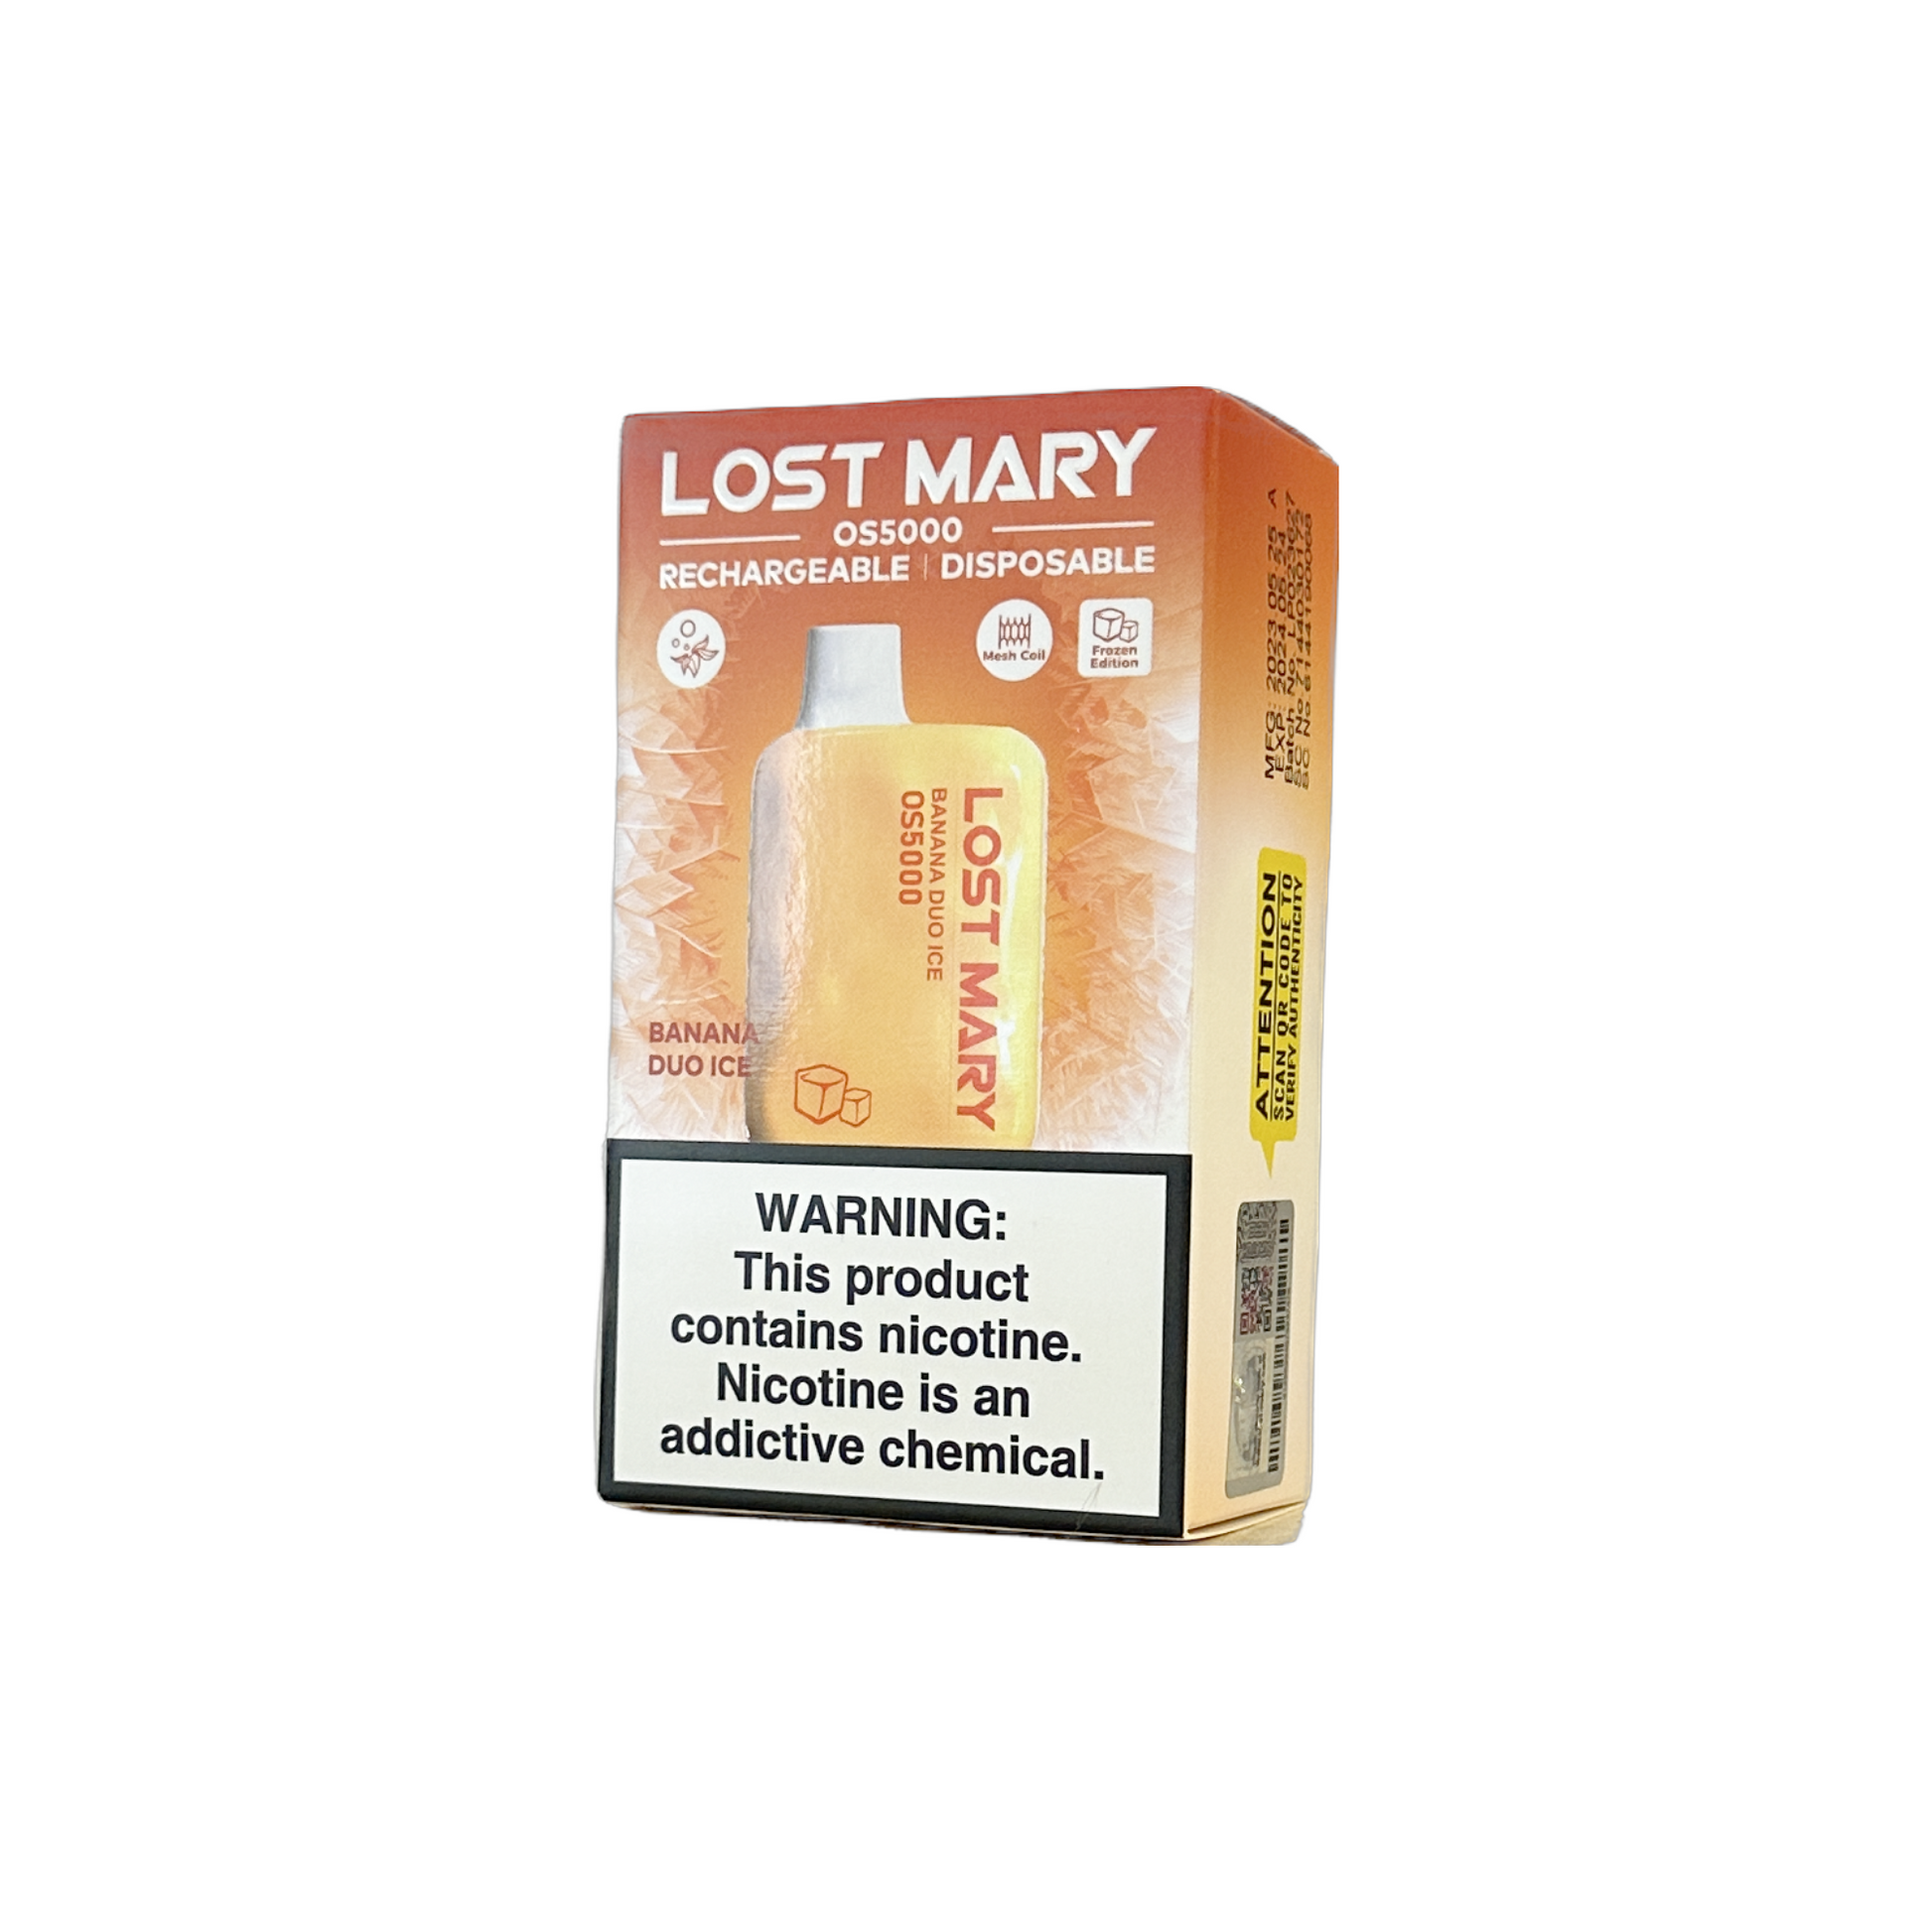 Lost Mary OS5000, Lost Mary OS5000 Vapes, Lost Mary OS5000 Disposable Vapes, Lost Mary OS5000 5000 Puffs, Lost Mary OS5000 Disposable Vape 5000 Puffs, Buy Lost Mary OS5000 Vape, Banana Duo Ice Lost Mary OS5000 Vape, Lost Mary OS5000 Banana Duo Ice Vape, Lost Mary OS5000 Vapeszn.